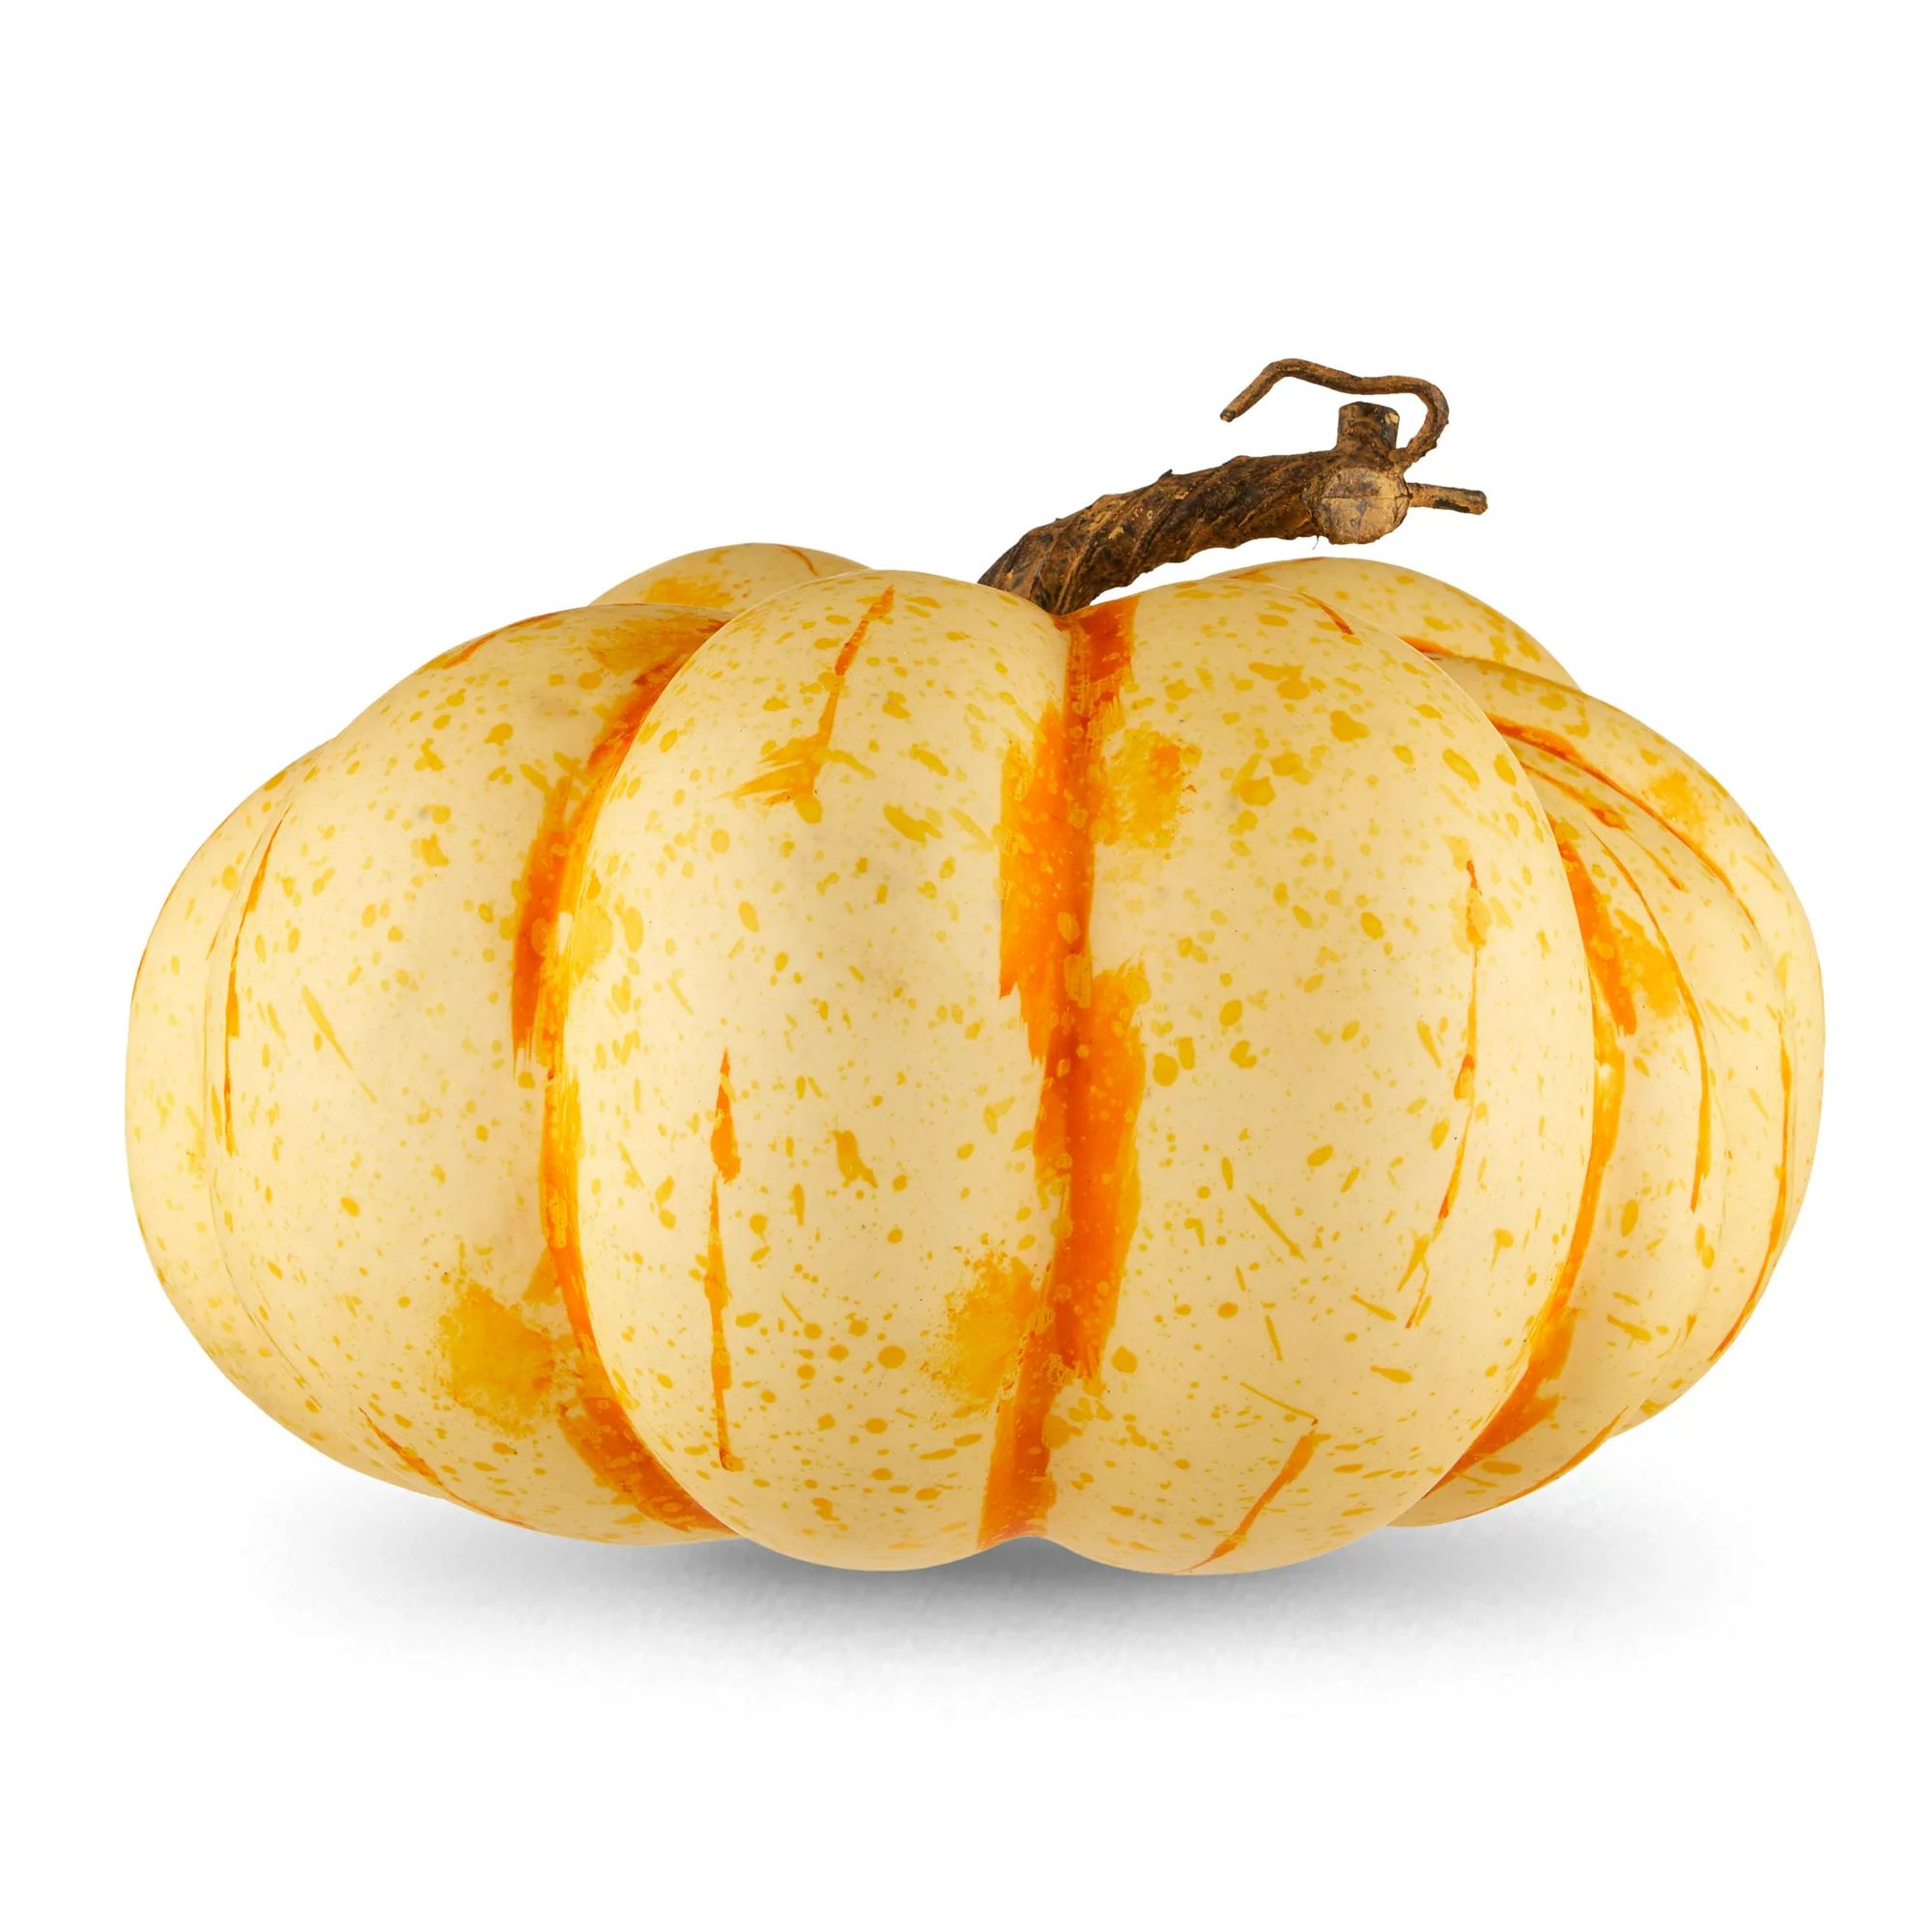 Harvest Heirloom Flat Orange Foam Pumpkin Decoration, 8 in L x 9 in W x 6 in H, Way to Celebrate | Walmart (US)